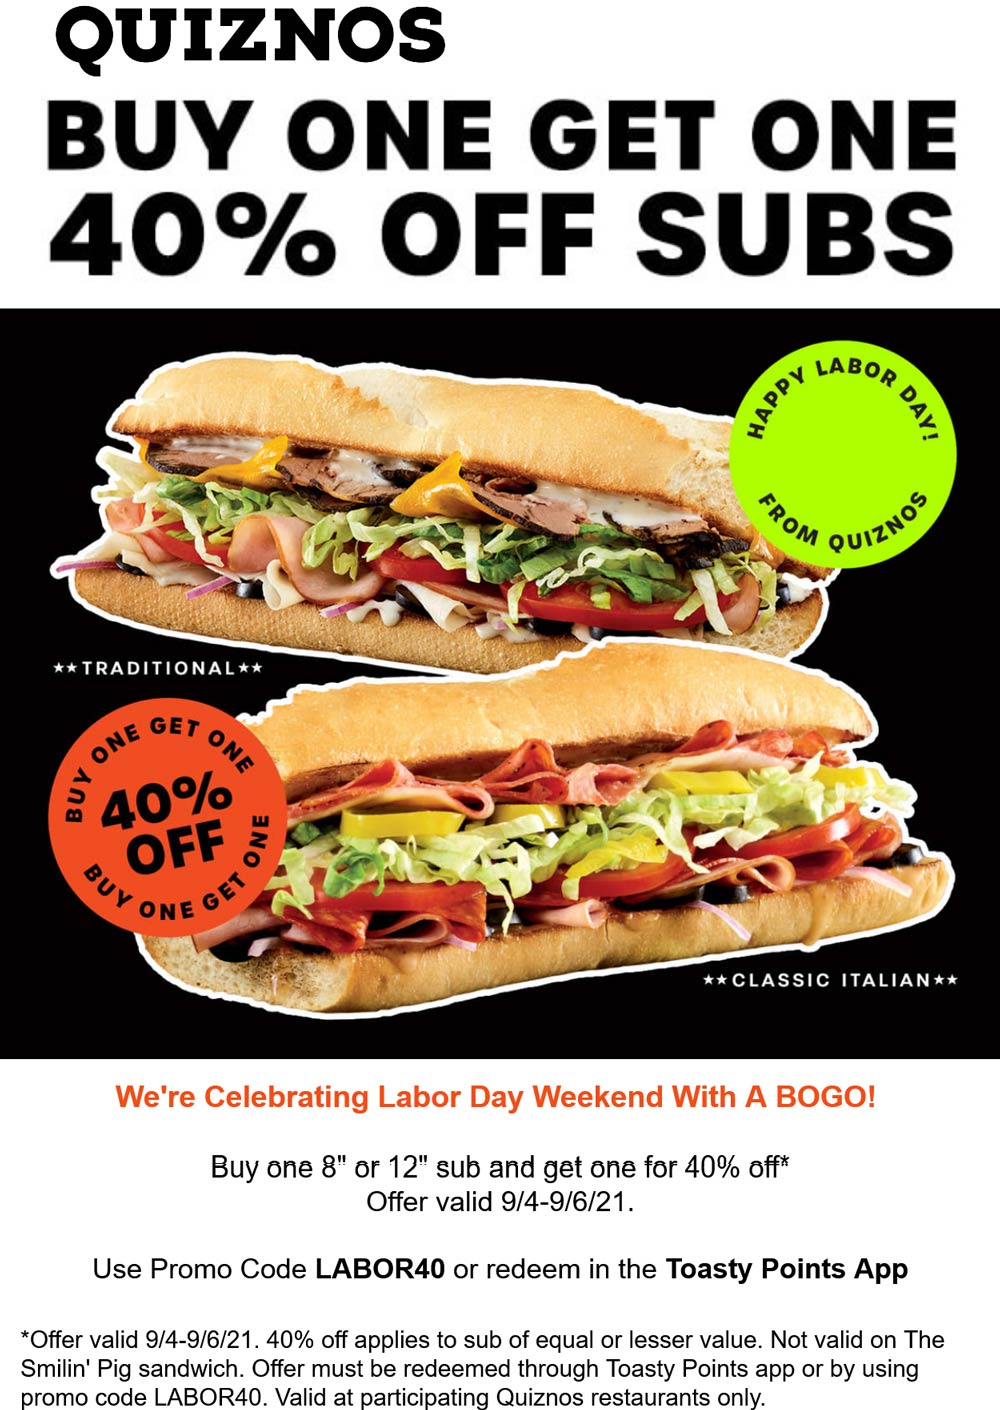 Quiznos restaurants Coupon  Second sub sandwich 40% off at Quiznos via promo code LABOR40 #quiznos 